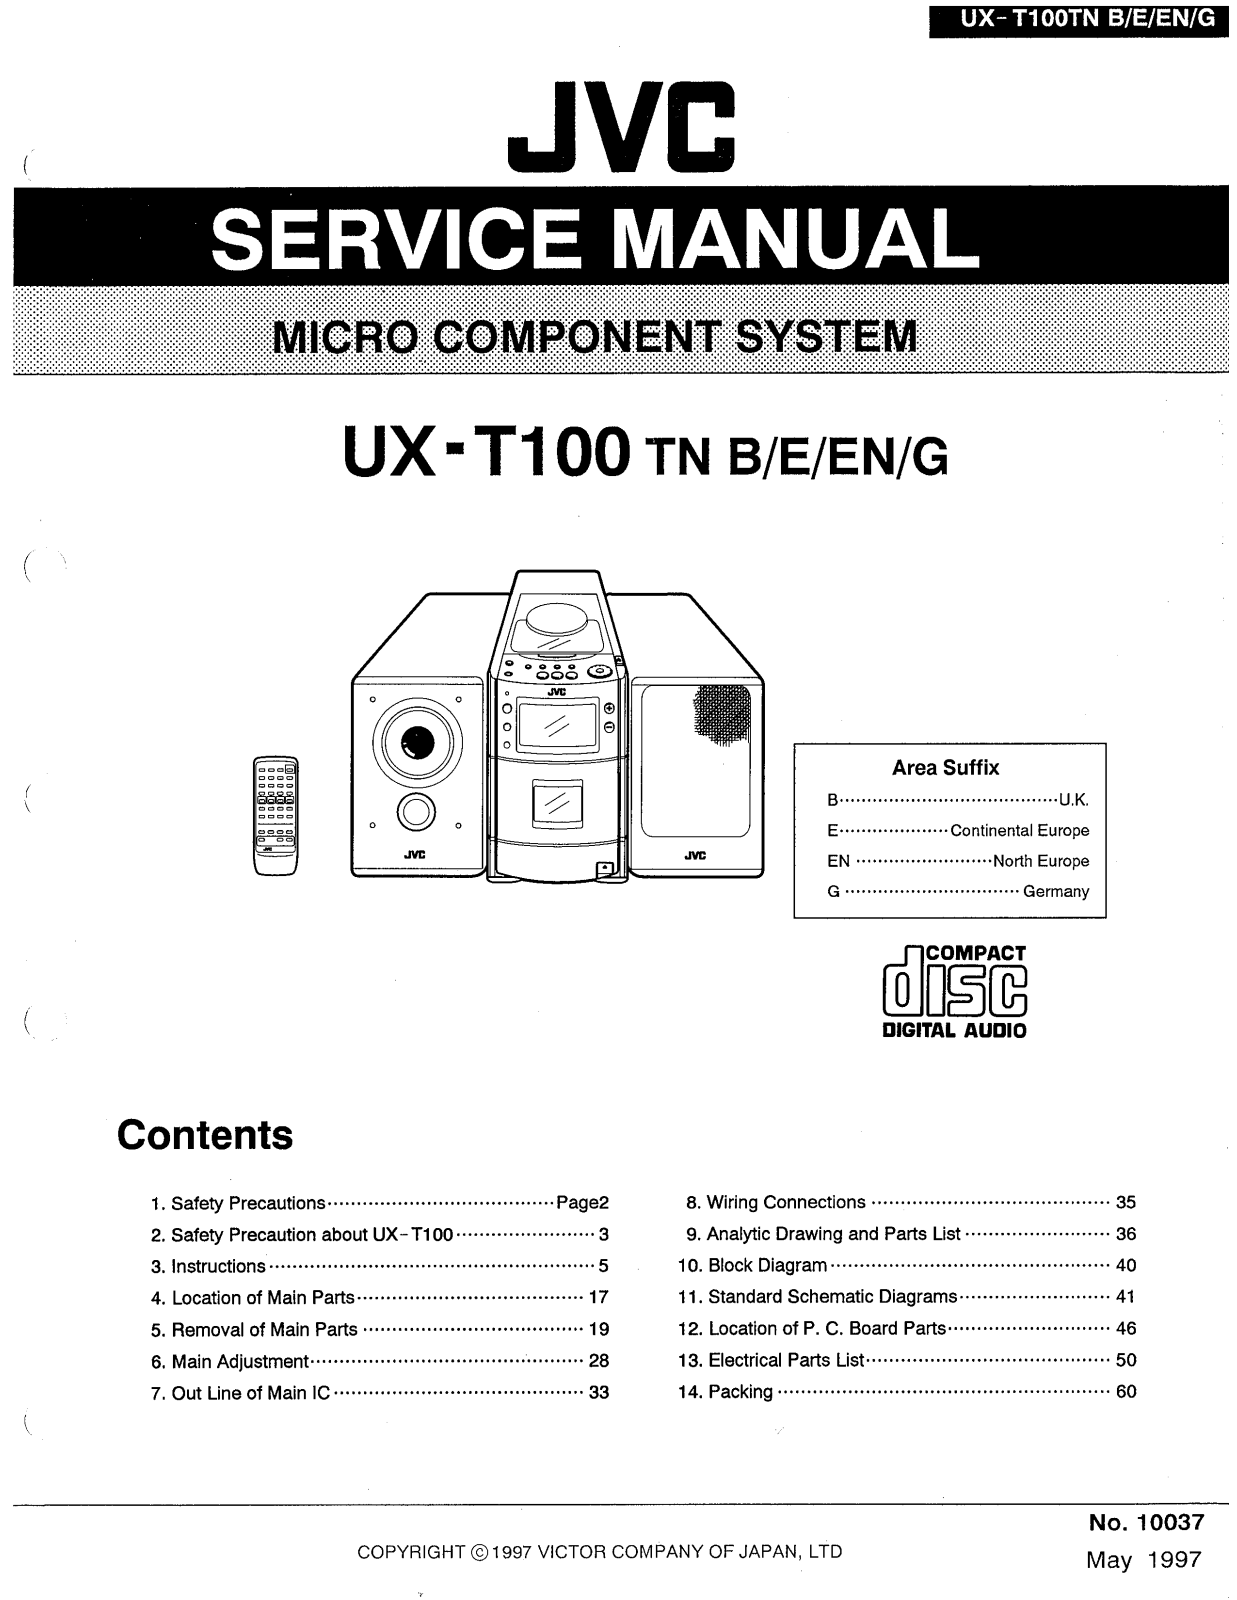 JVC UXT-100 Schematic